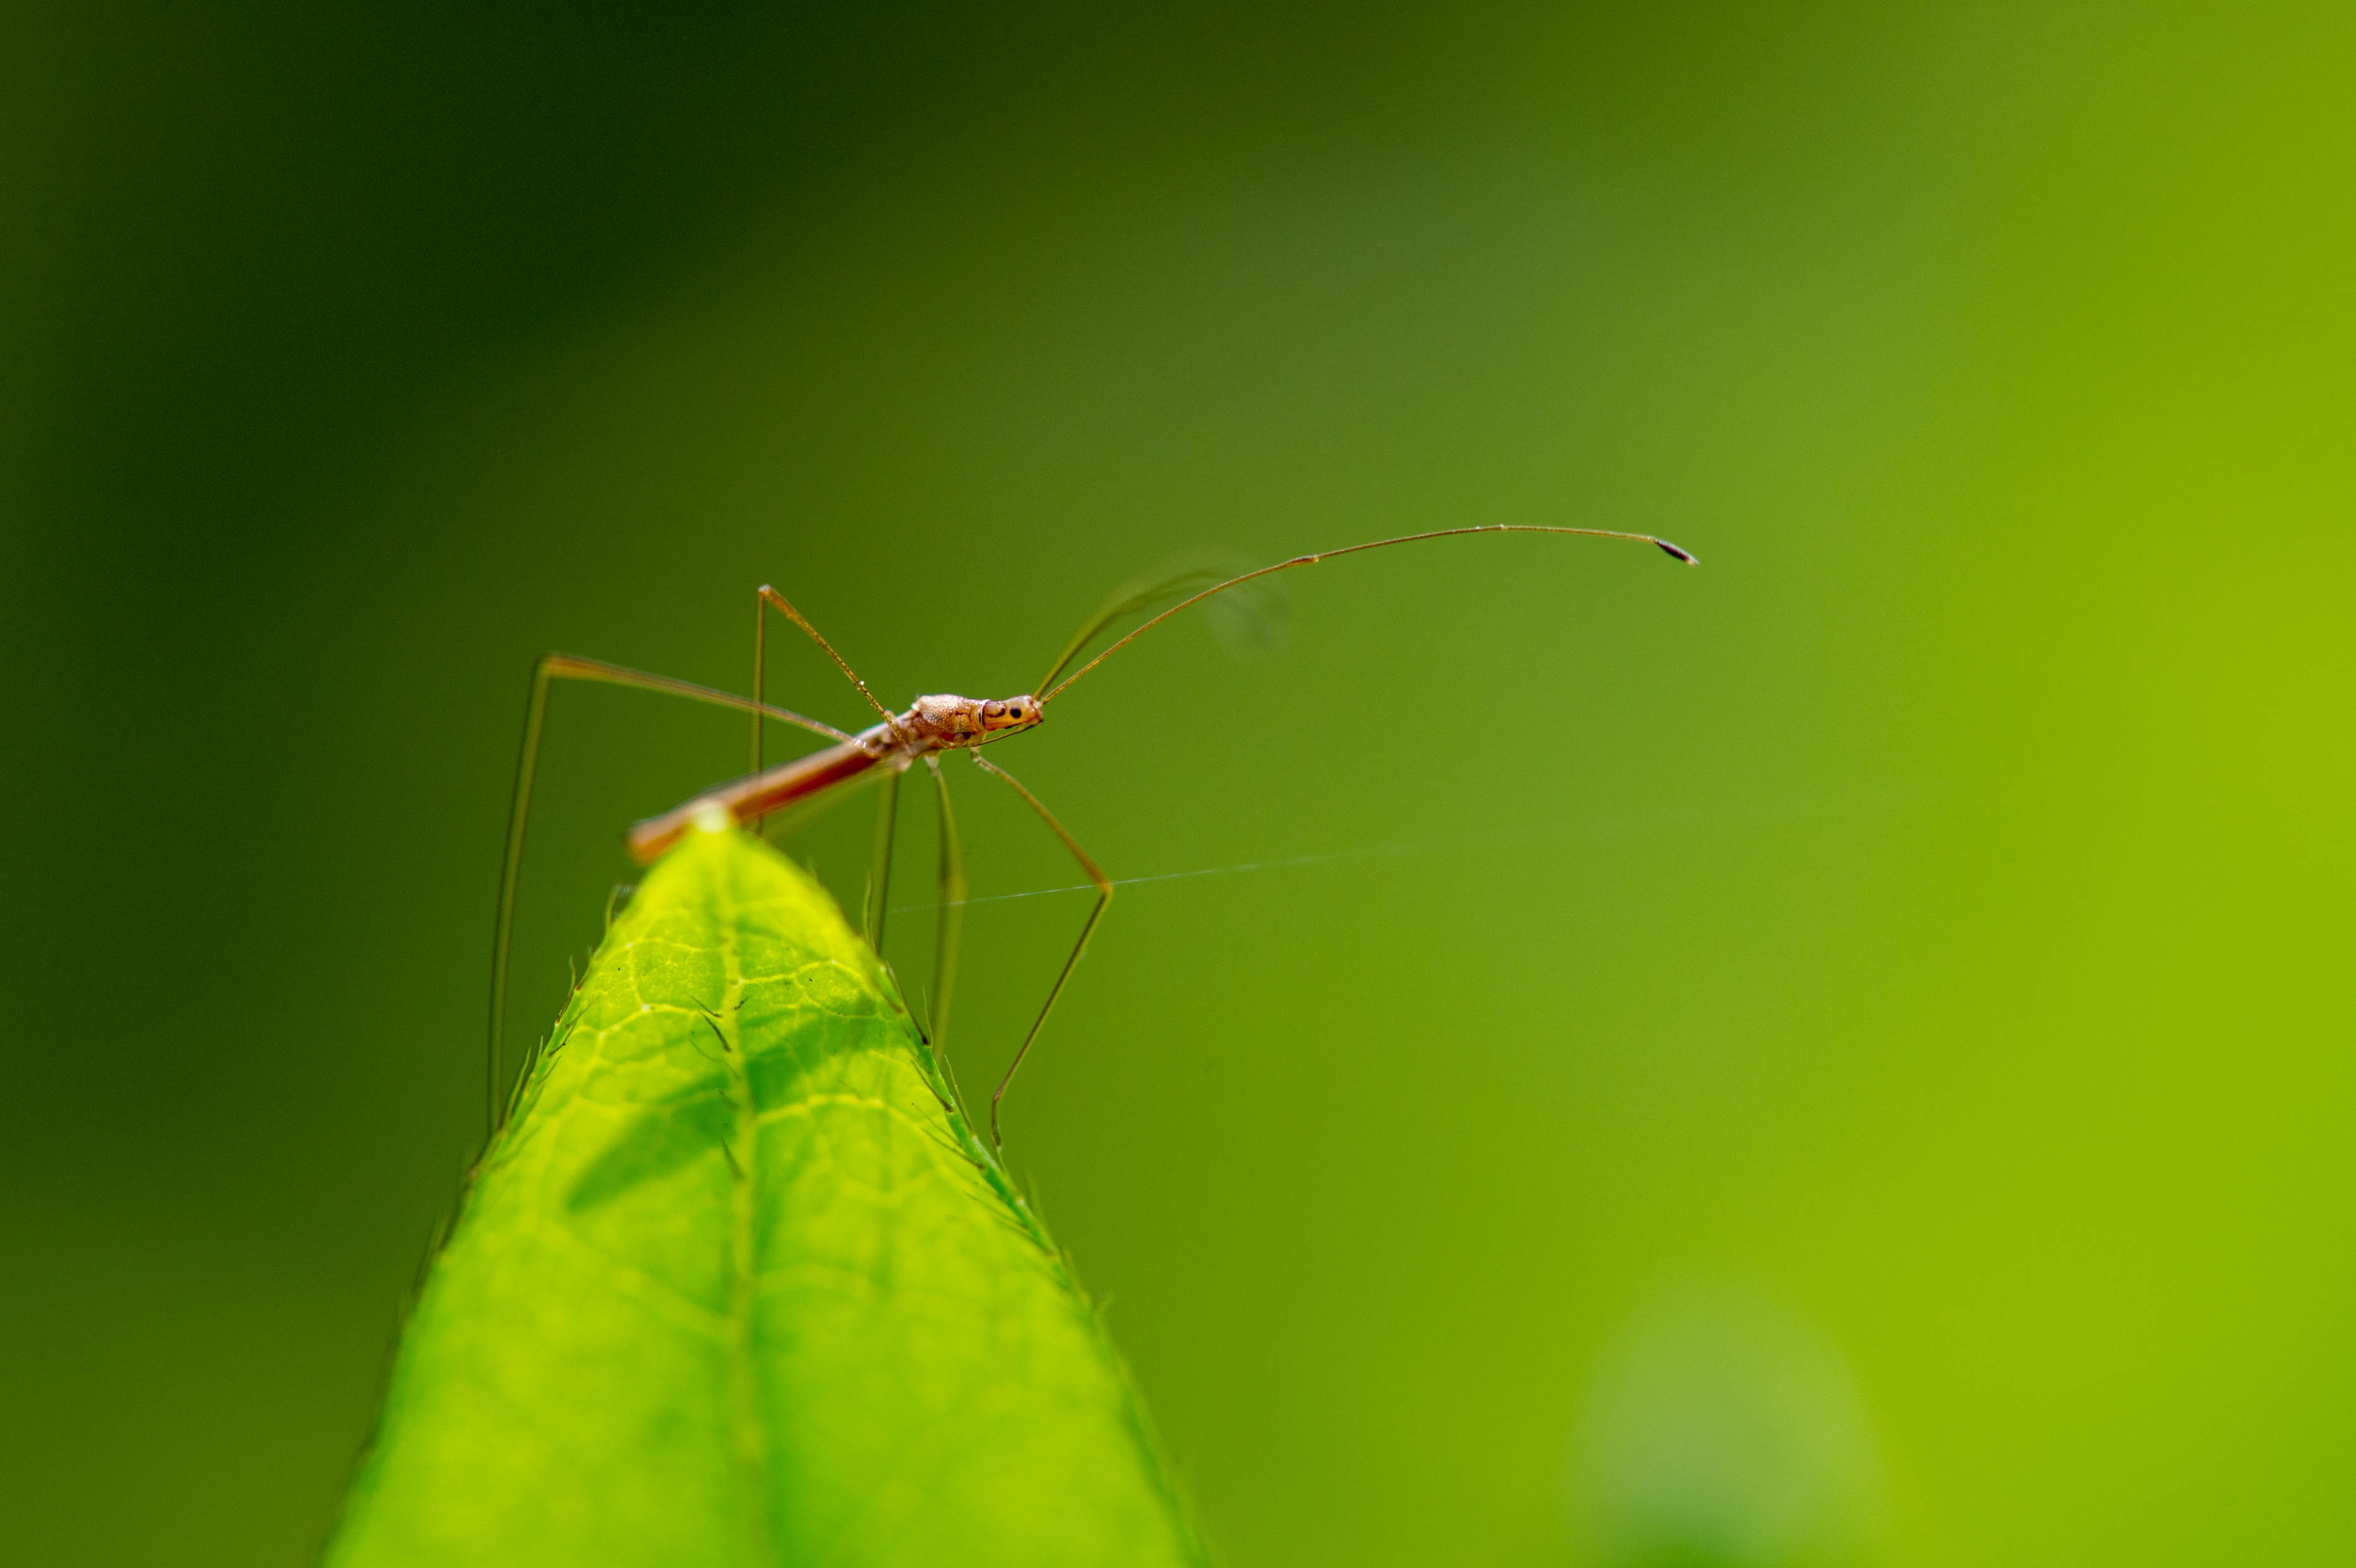 イトカメムシ 虫の写真と生態なら昆虫写真図鑑 ムシミル